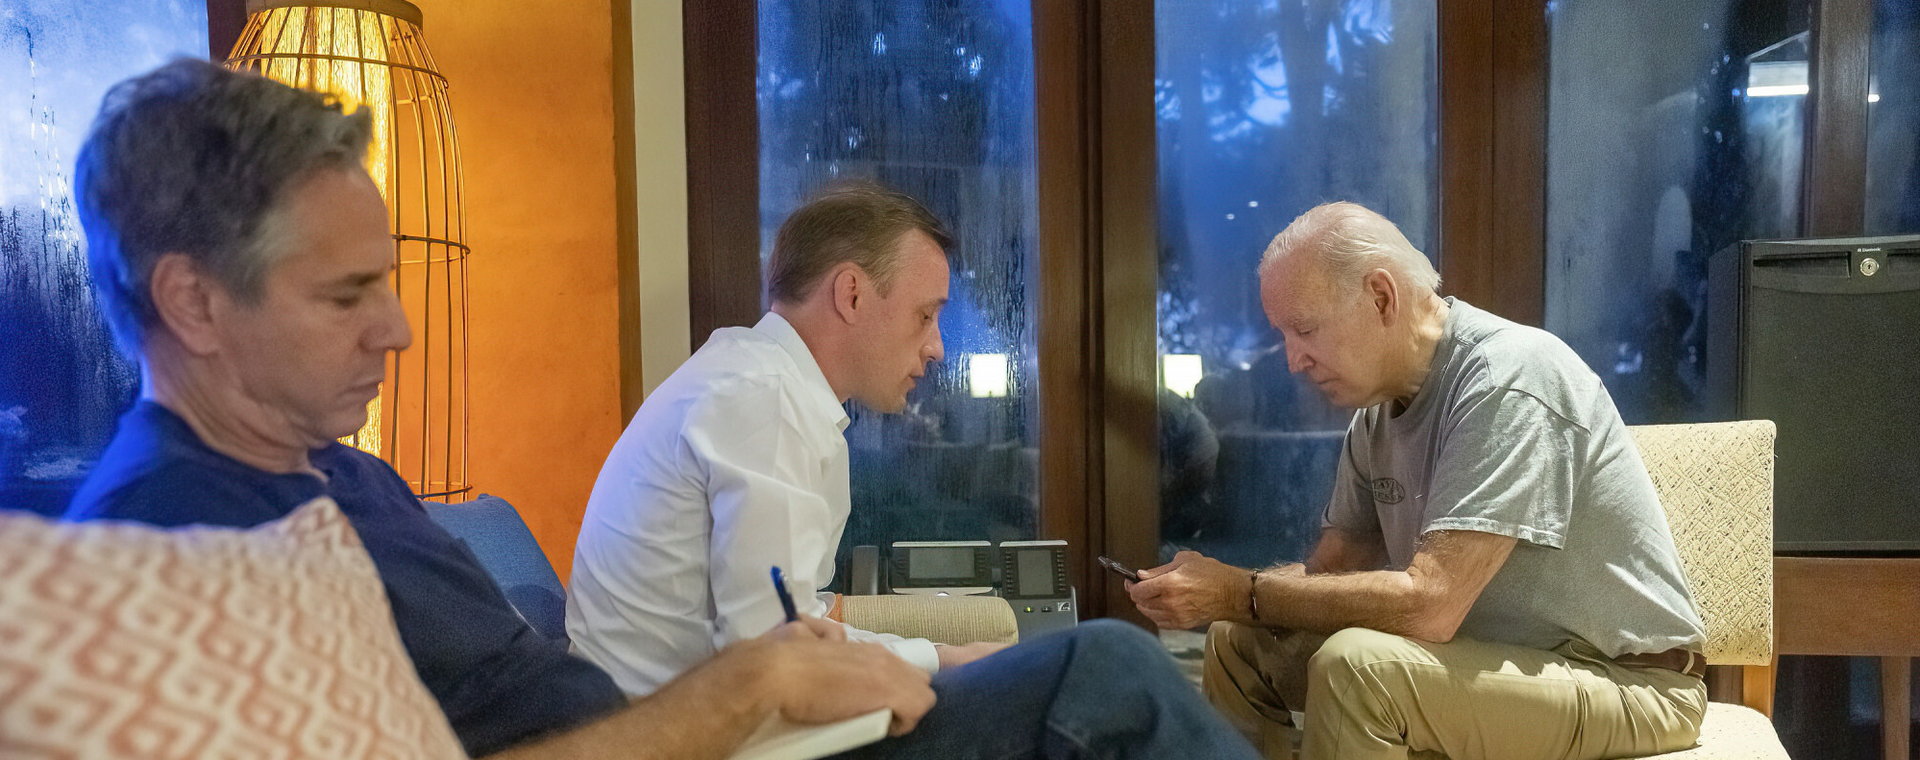 Prezydent USA Joe Biden, rozmawiający dziś w nocy przez telefon z prezydentem Polski Andrzejem Dudą. Na zdjęciu widoczni są także doradca Białego Domu do spraw bezpieczeństwa narodowego, Jake Sullivan i sekretarz stanu Antony Blinken